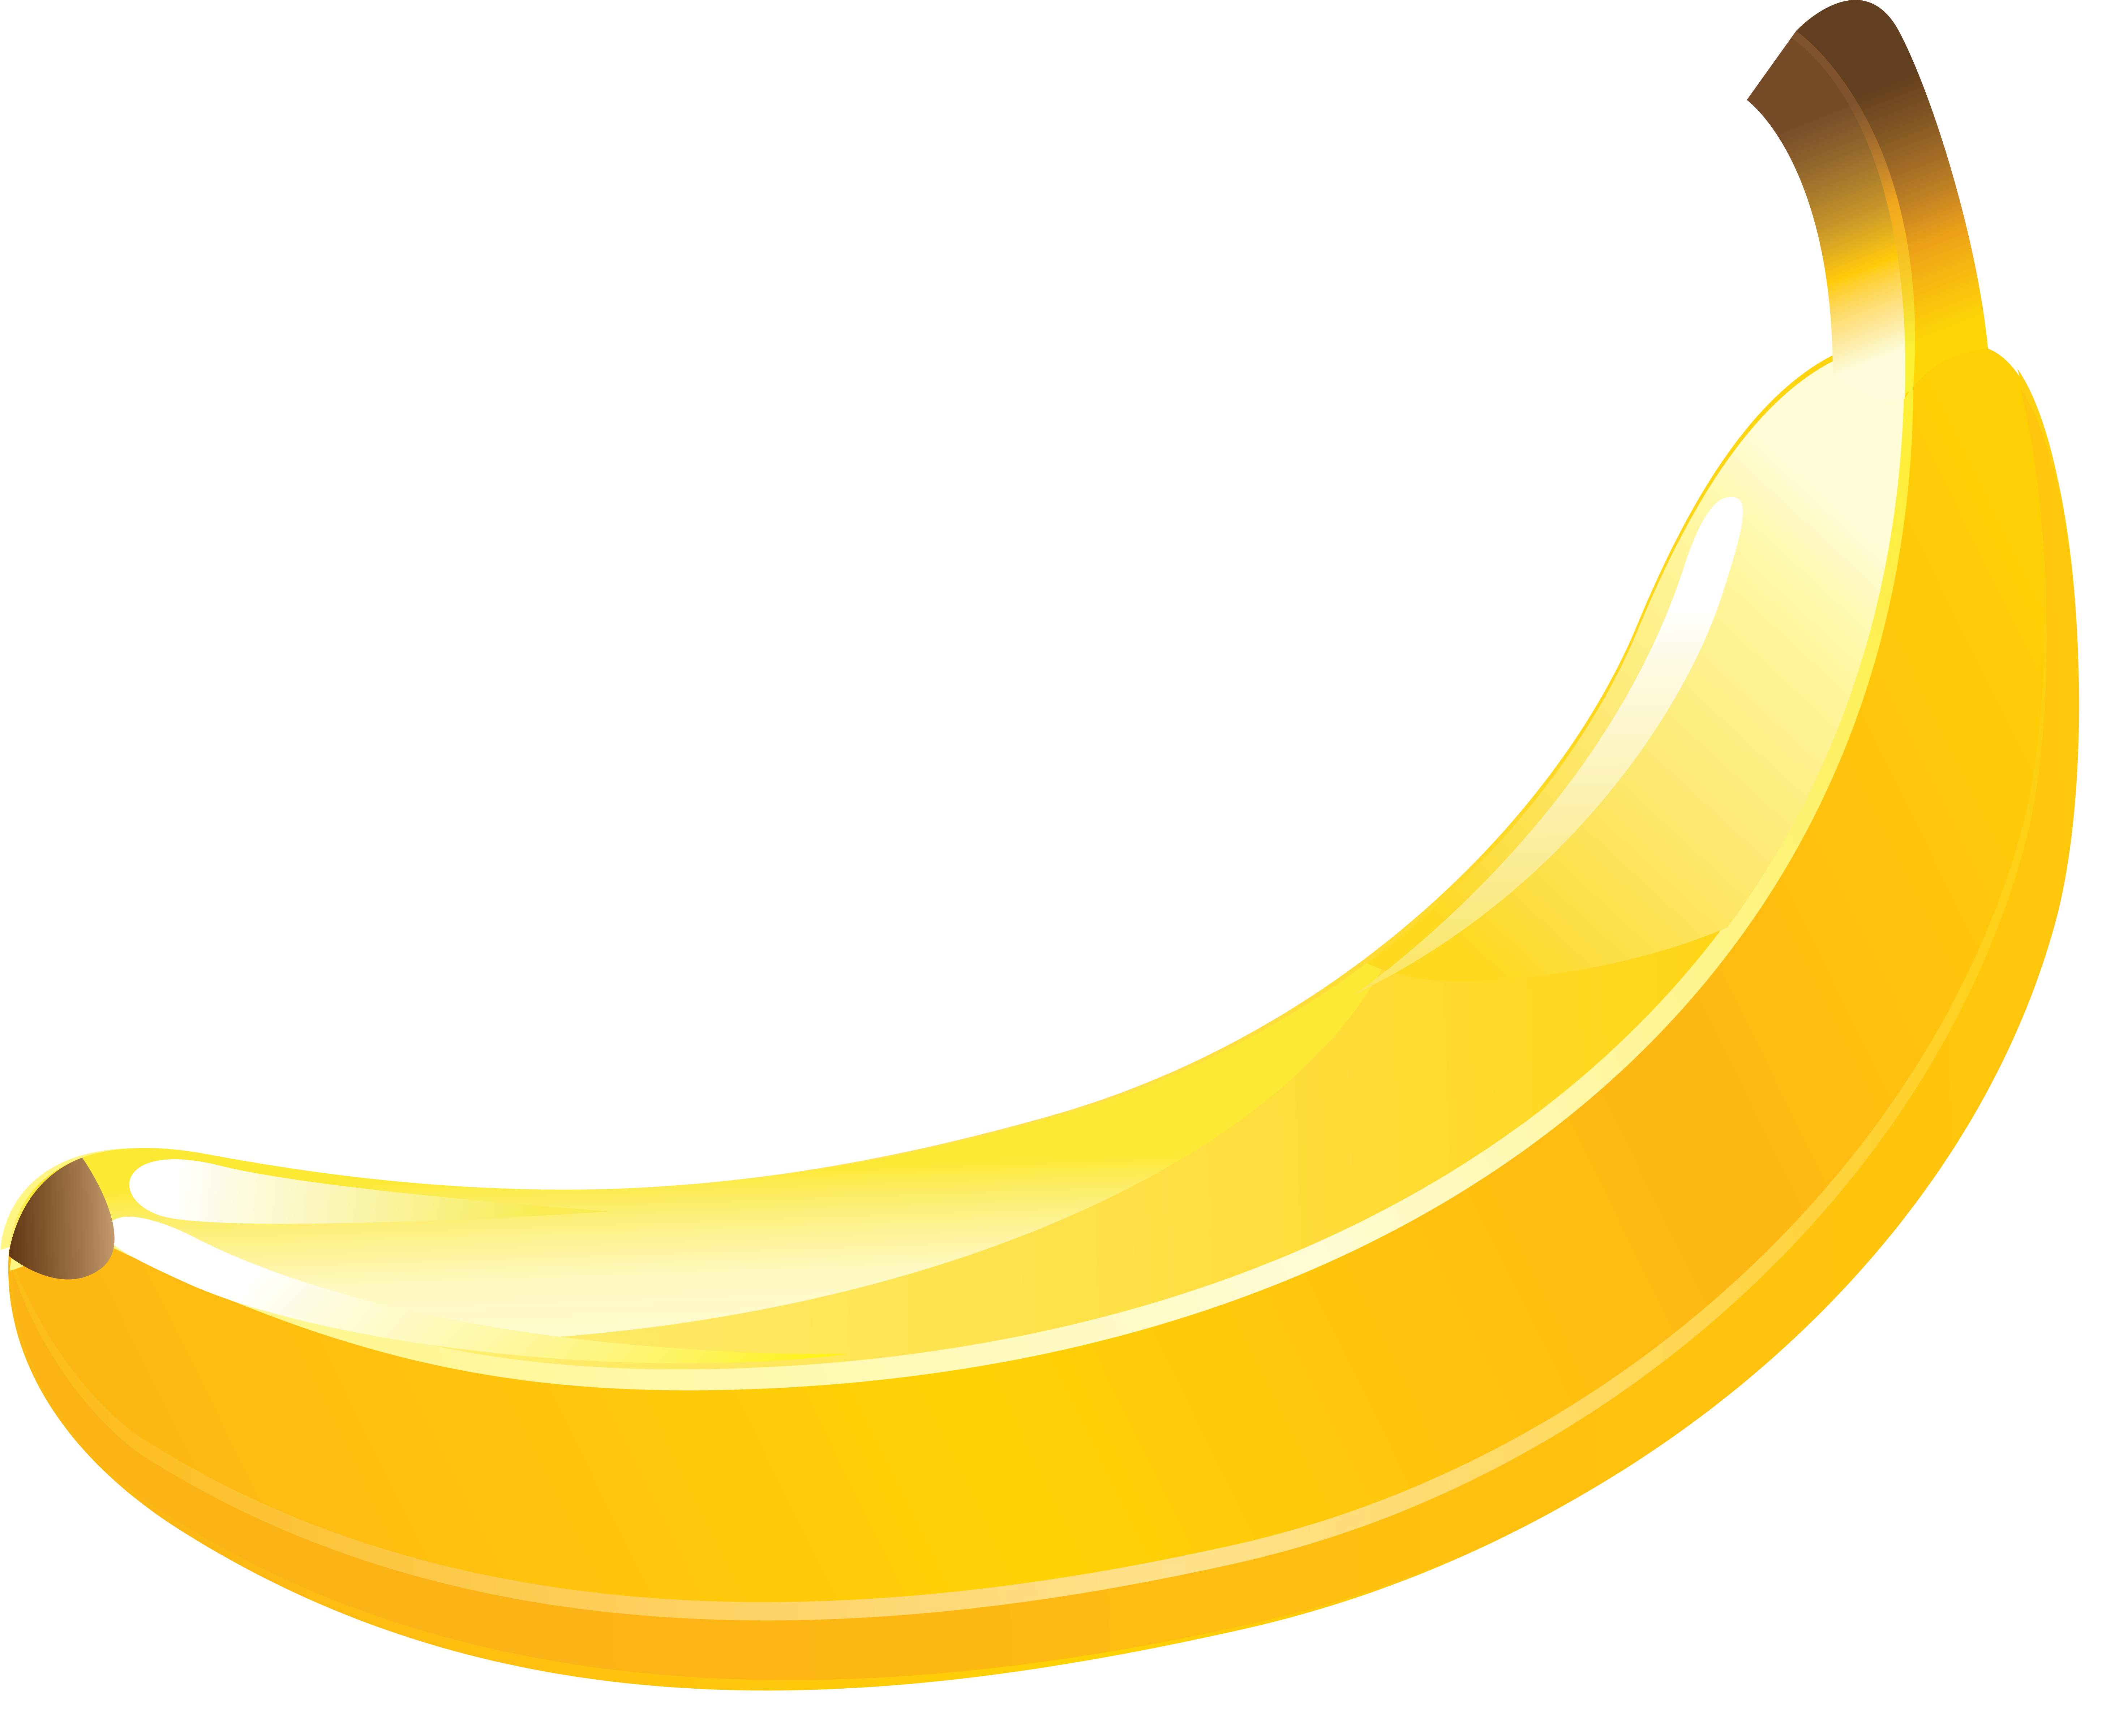 Immagini di banane